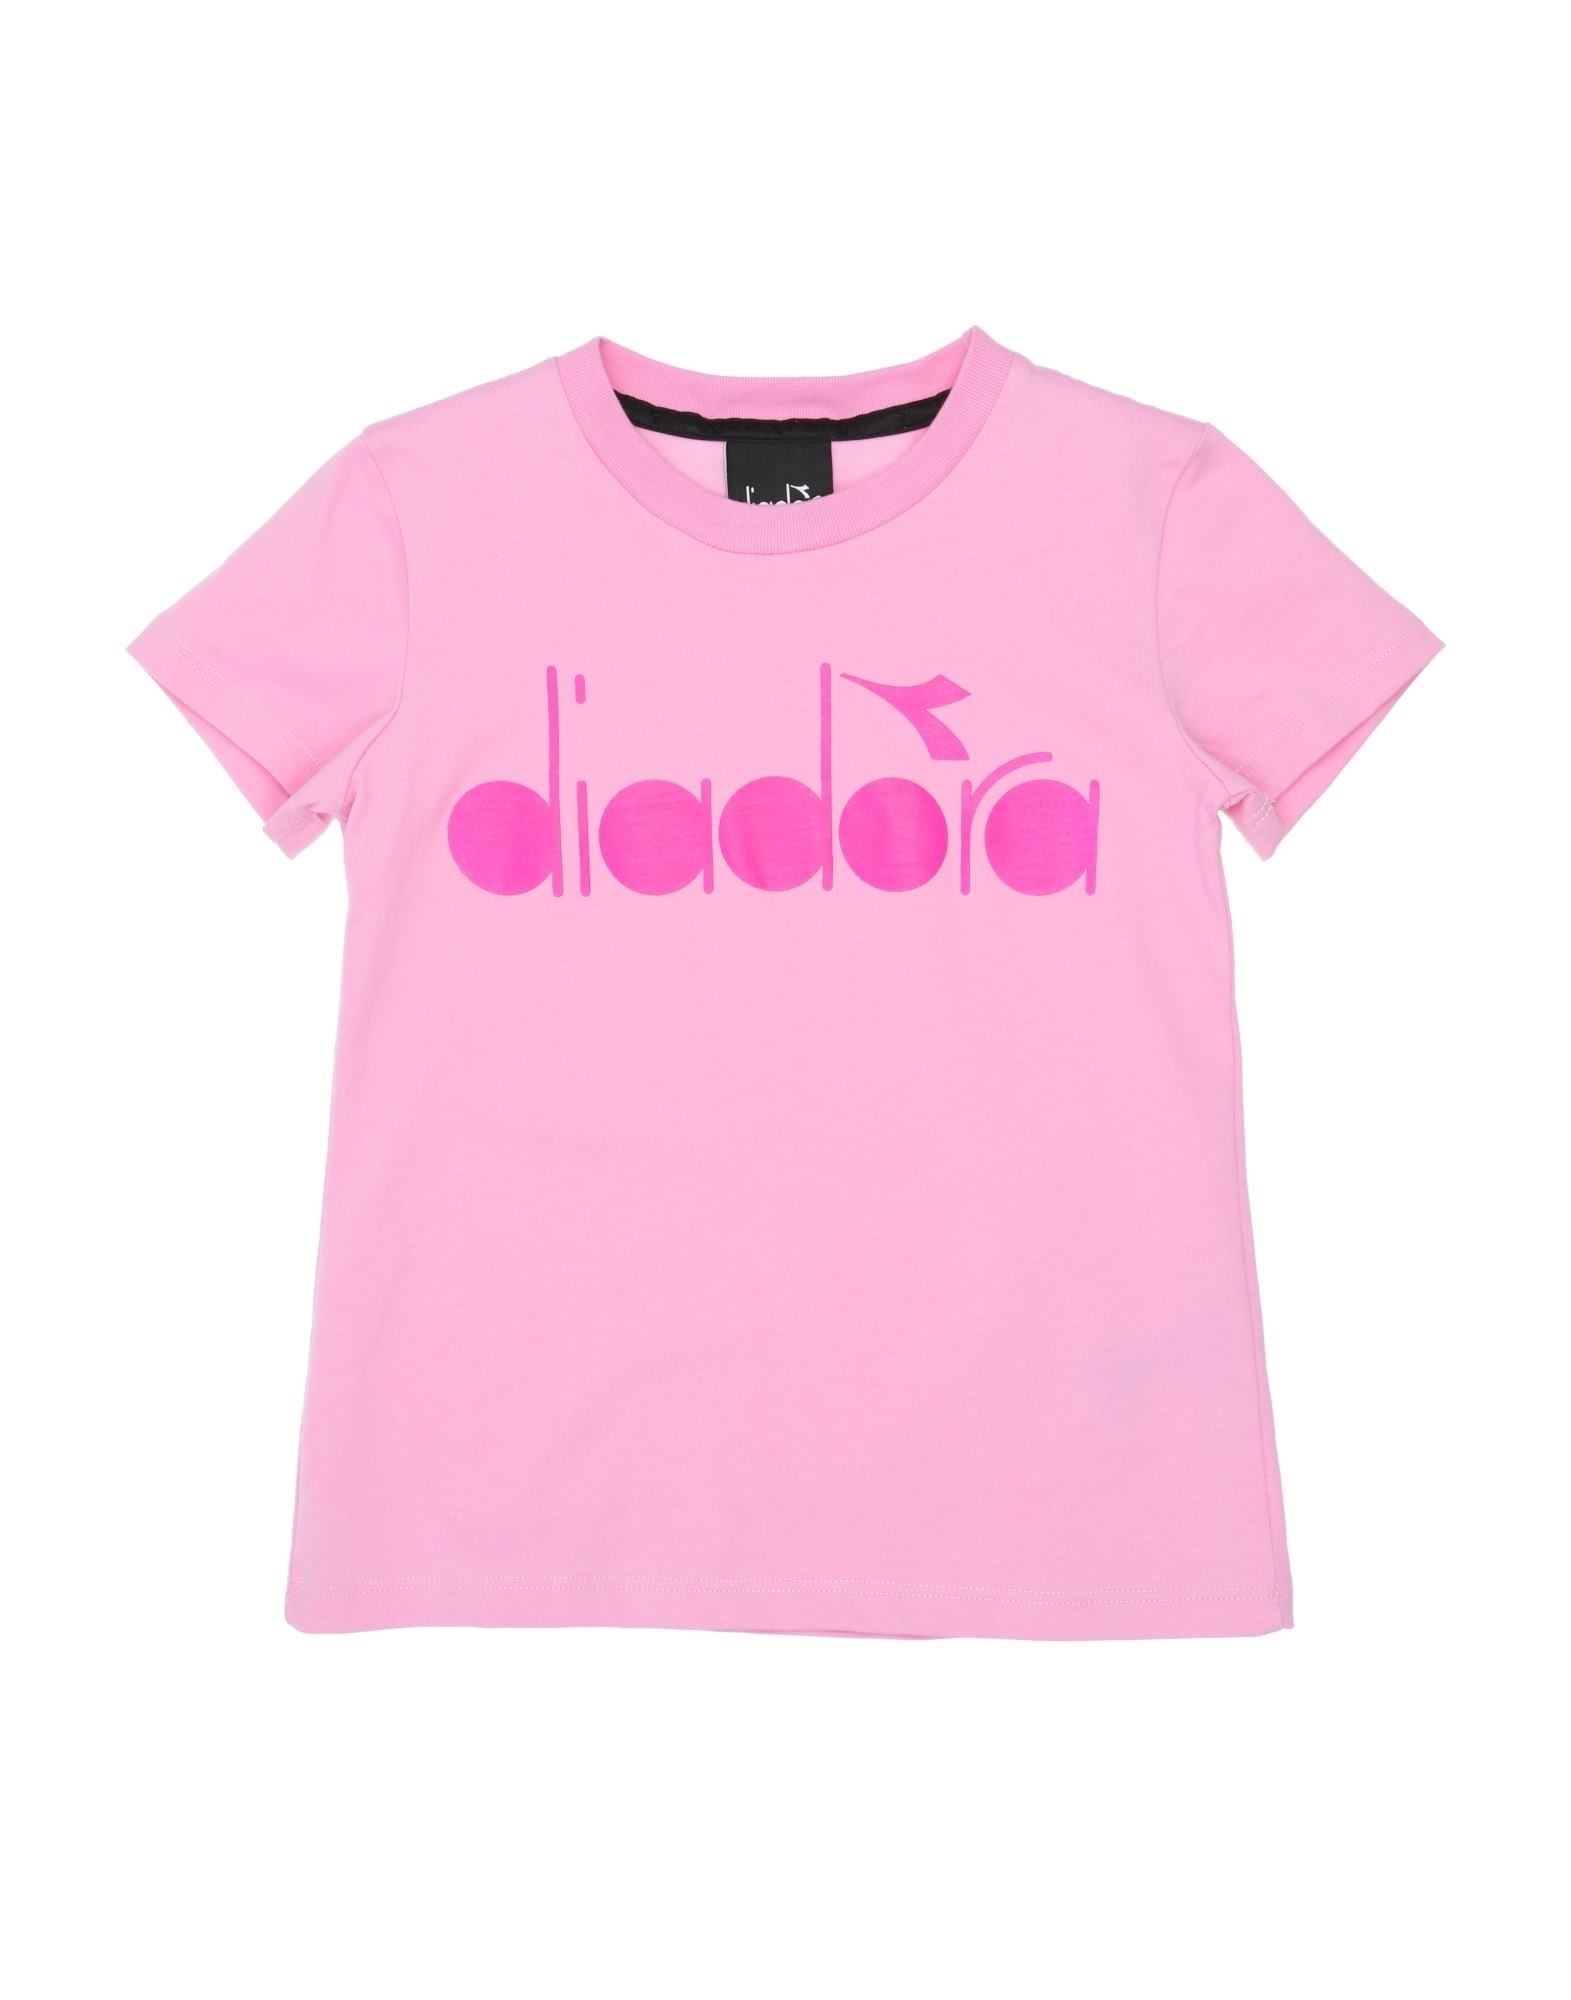 Shop Diadora Toddler Girl T-shirt Pink Size 6 Cotton